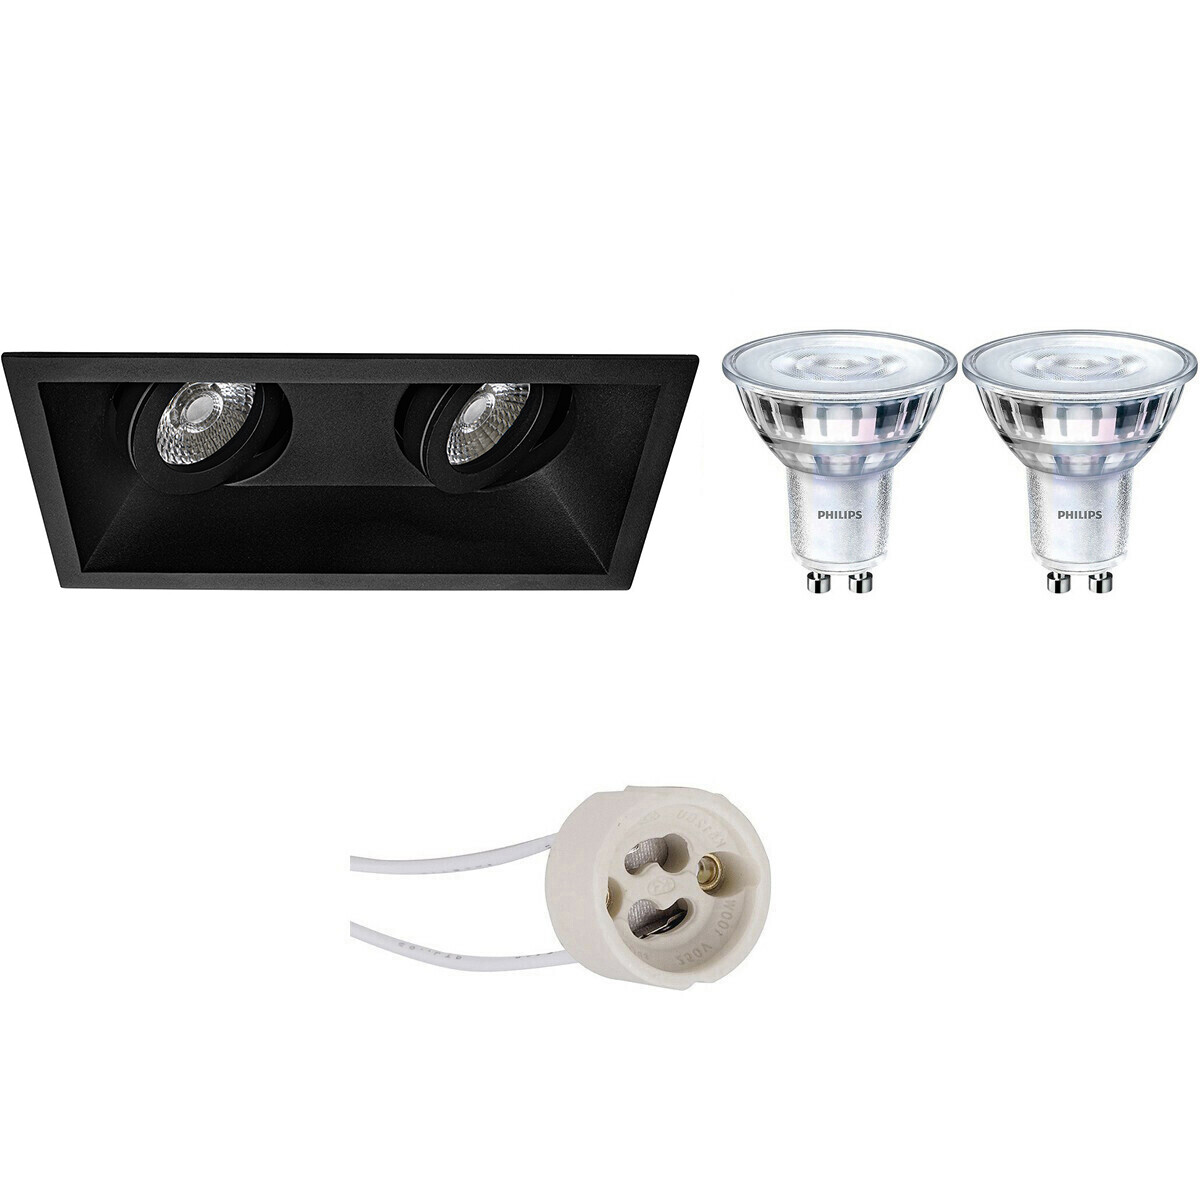 LED Spot Set - Pragmi Zano Pro - GU10 Fitting - Inbouw Rechthoek Dubbel - Mat Zwart - Kantelbaar - 185x93mm - Philips - SceneSwitch 827 36D - 1.5W-5W - Warm Wit 2200K-2700K - Dimba